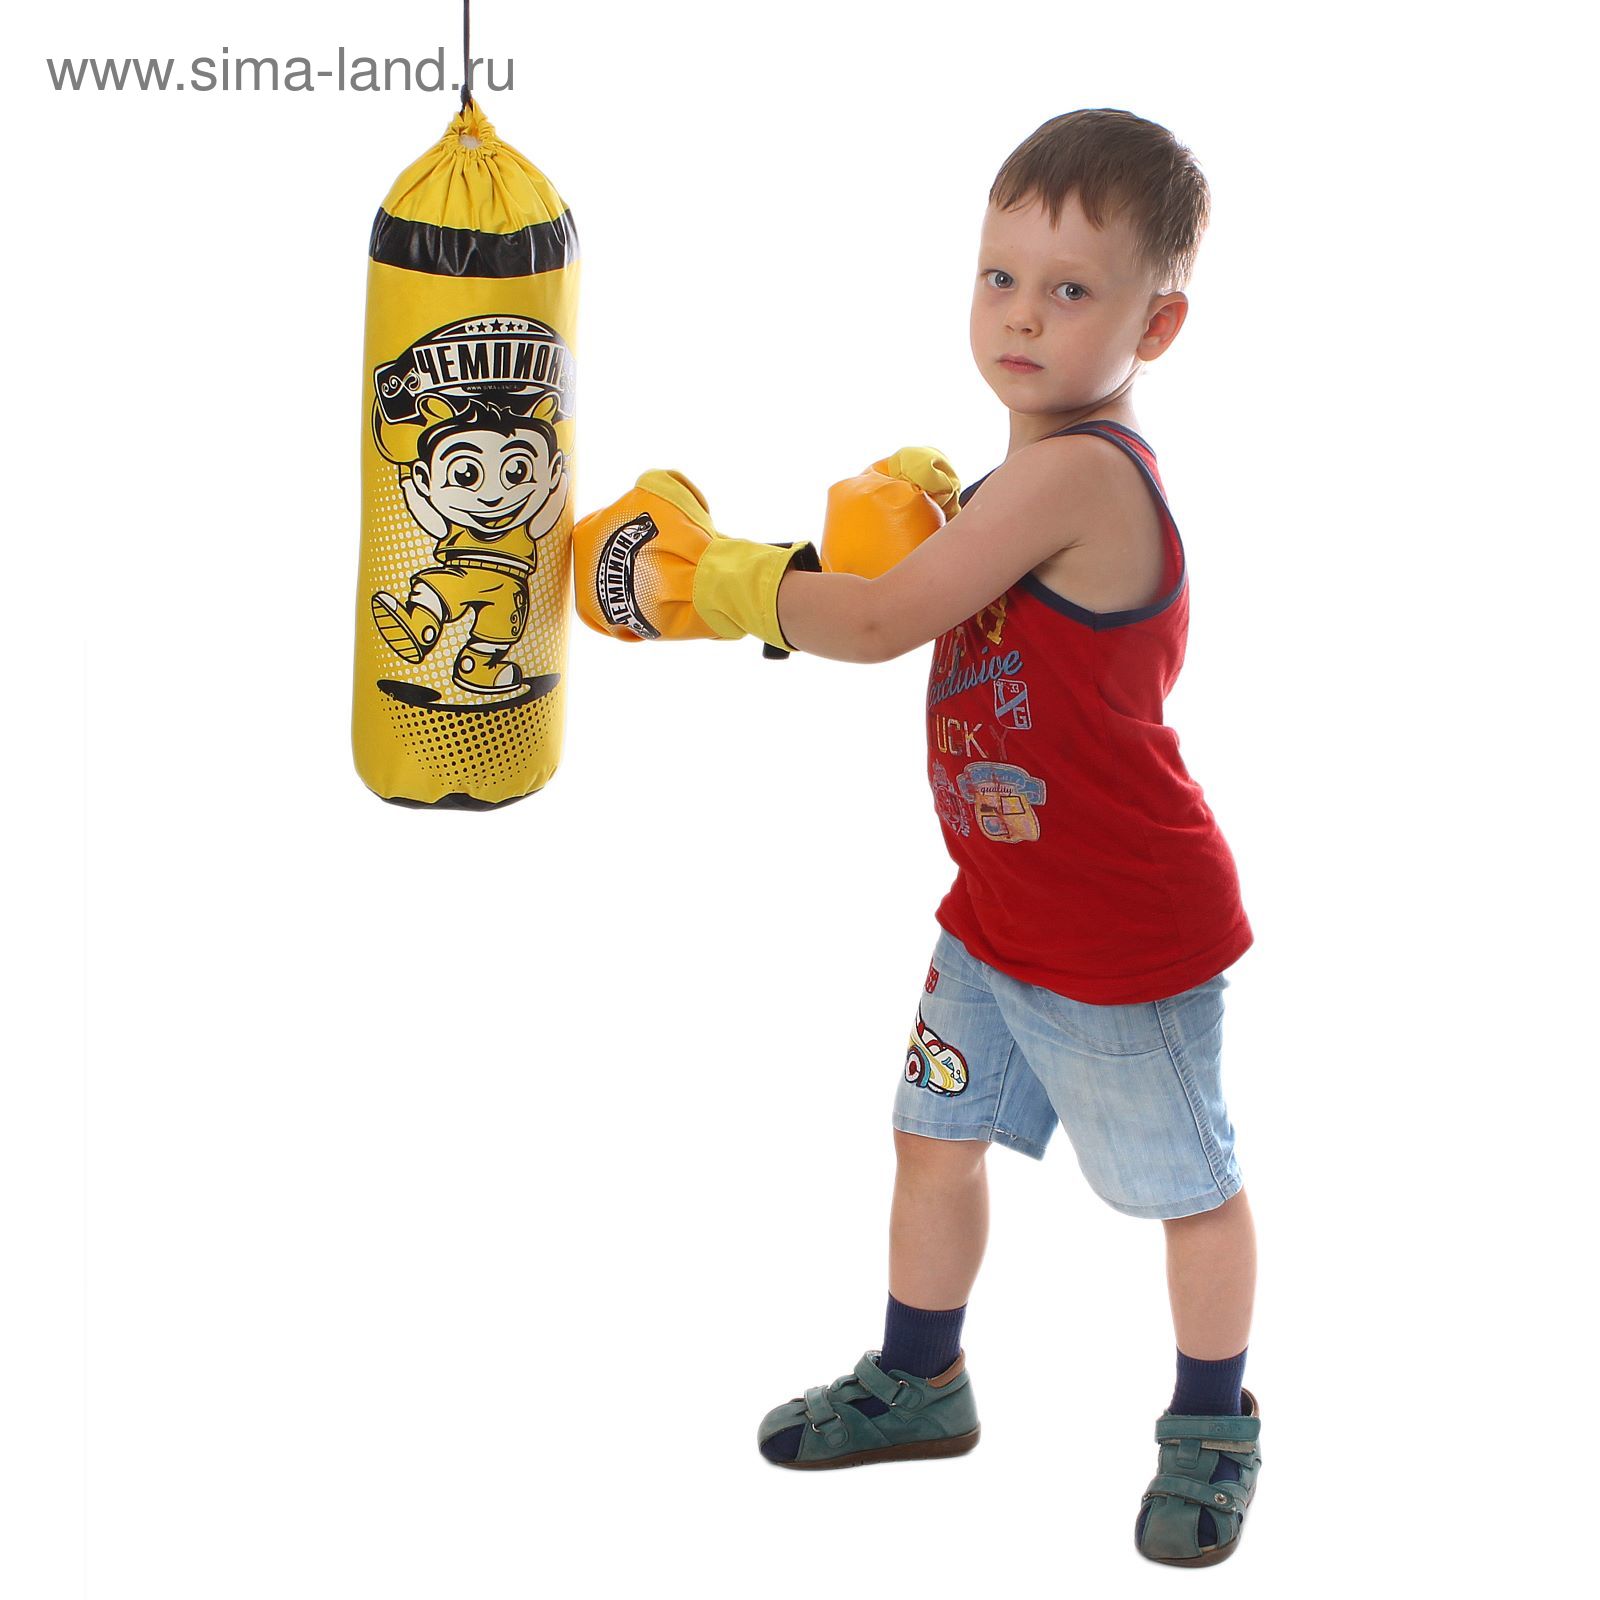 Детский боксёрский набор "Чемпион бокса": груша и перчатки